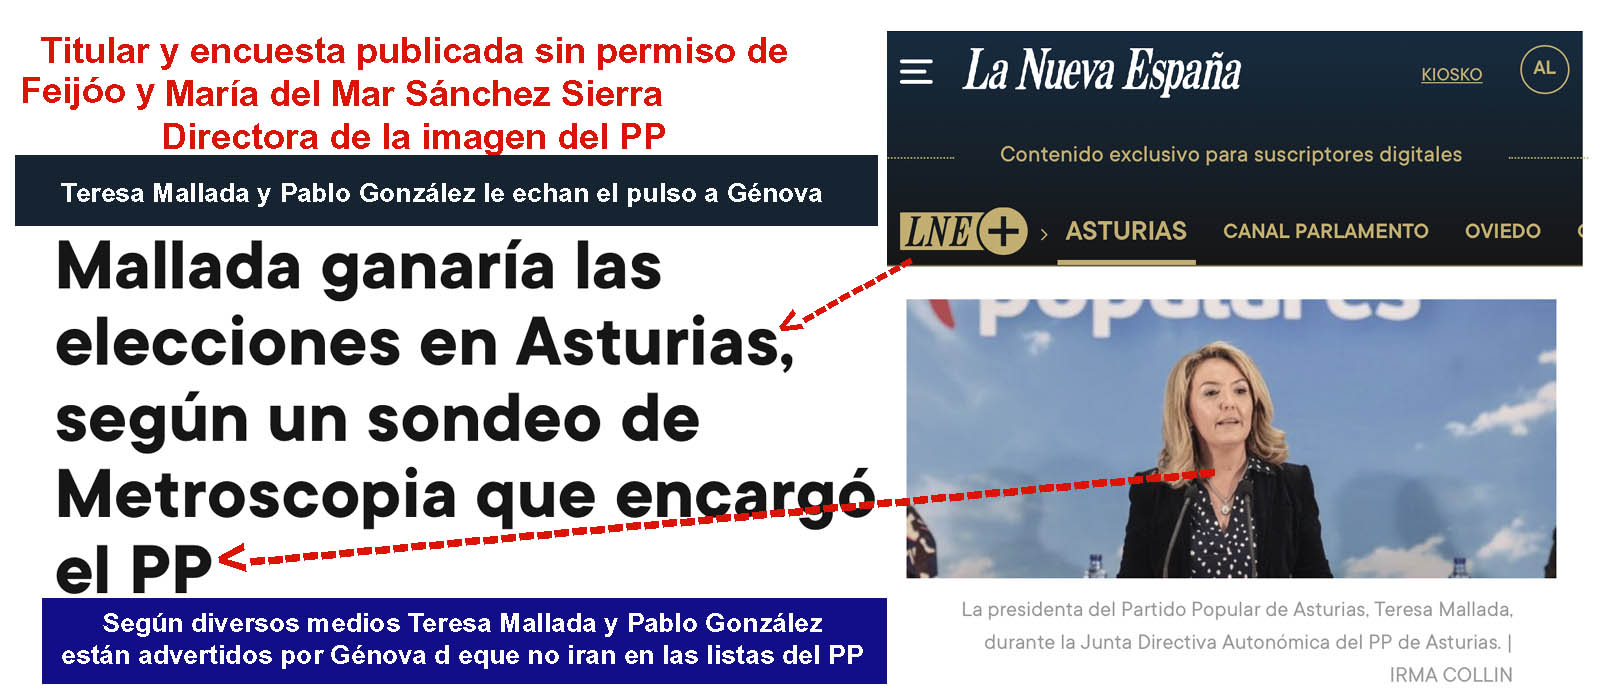 Ante la corrupción demoscópica en Asturias a la sombra de Pablo Gonzalez  "Asturbarometro", Teresa Mallada se embarca con la Nueva España y dinero  del PP en una encuesta reputacional en contra de